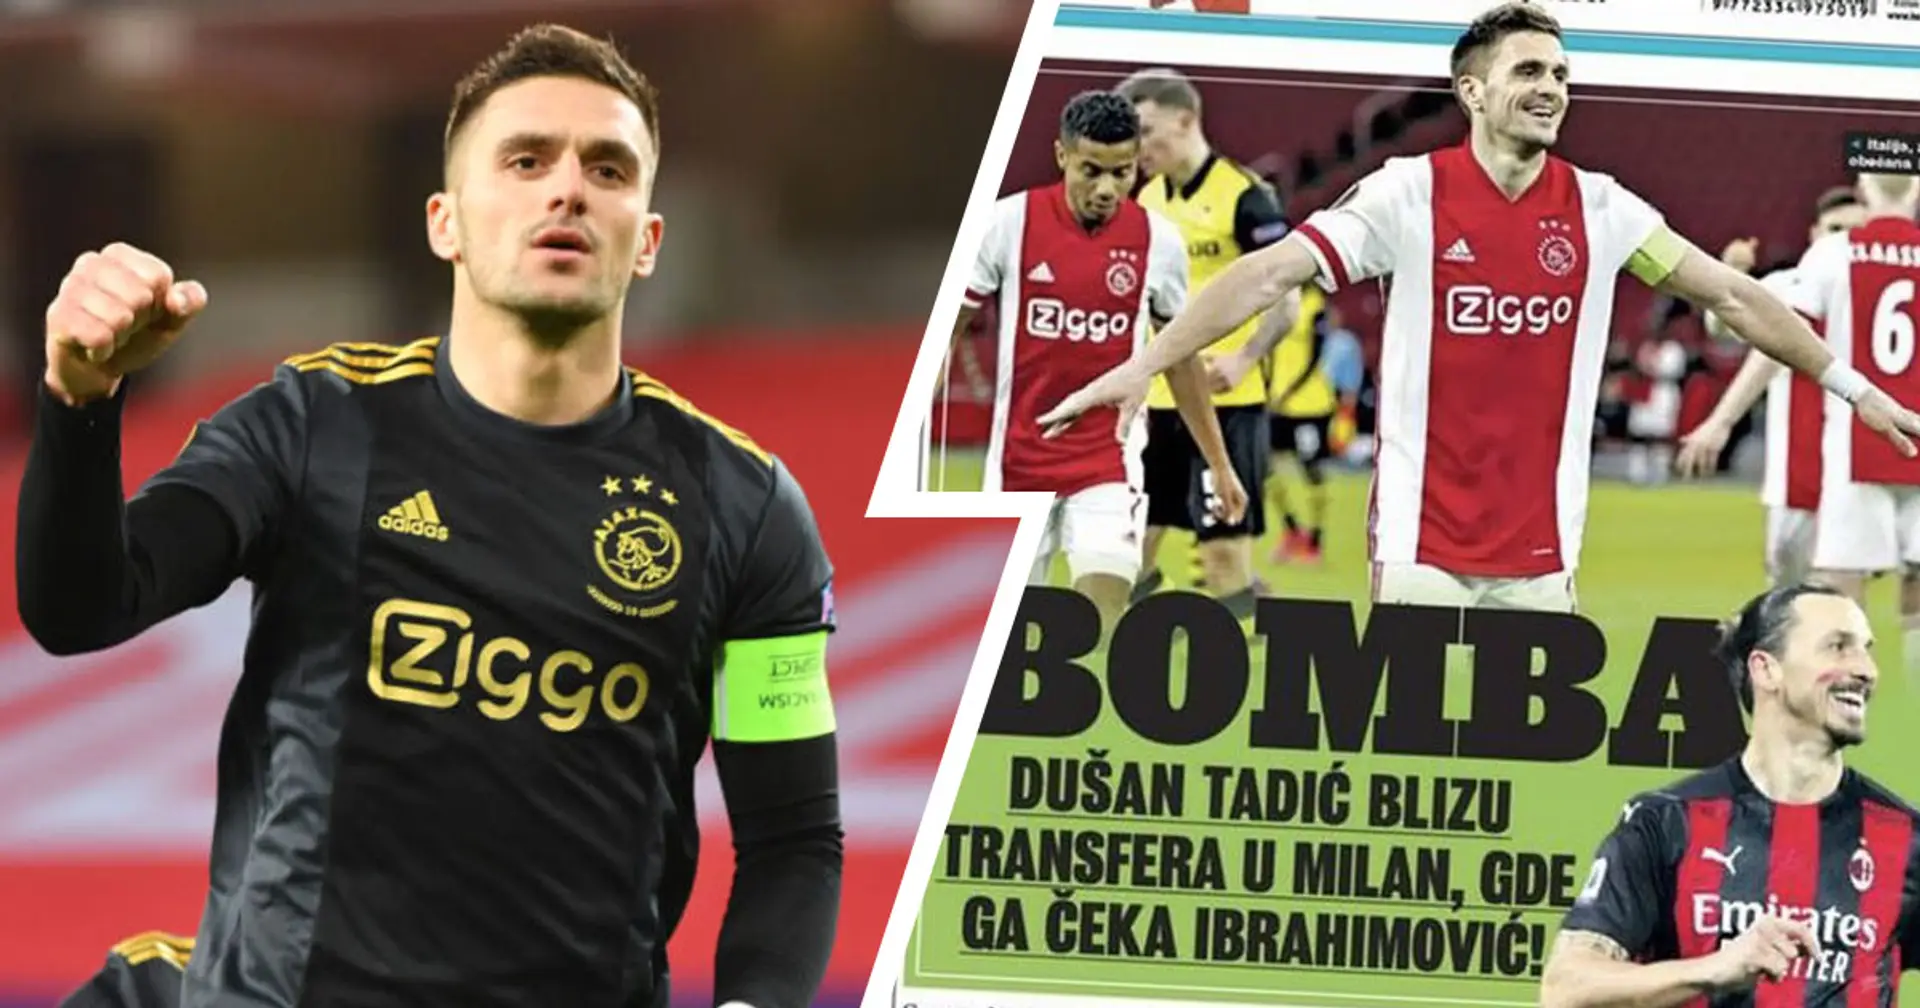 "Tadic vicino al trasferimento al Milan", anche da Belgrado confermano l'operazione di mercato